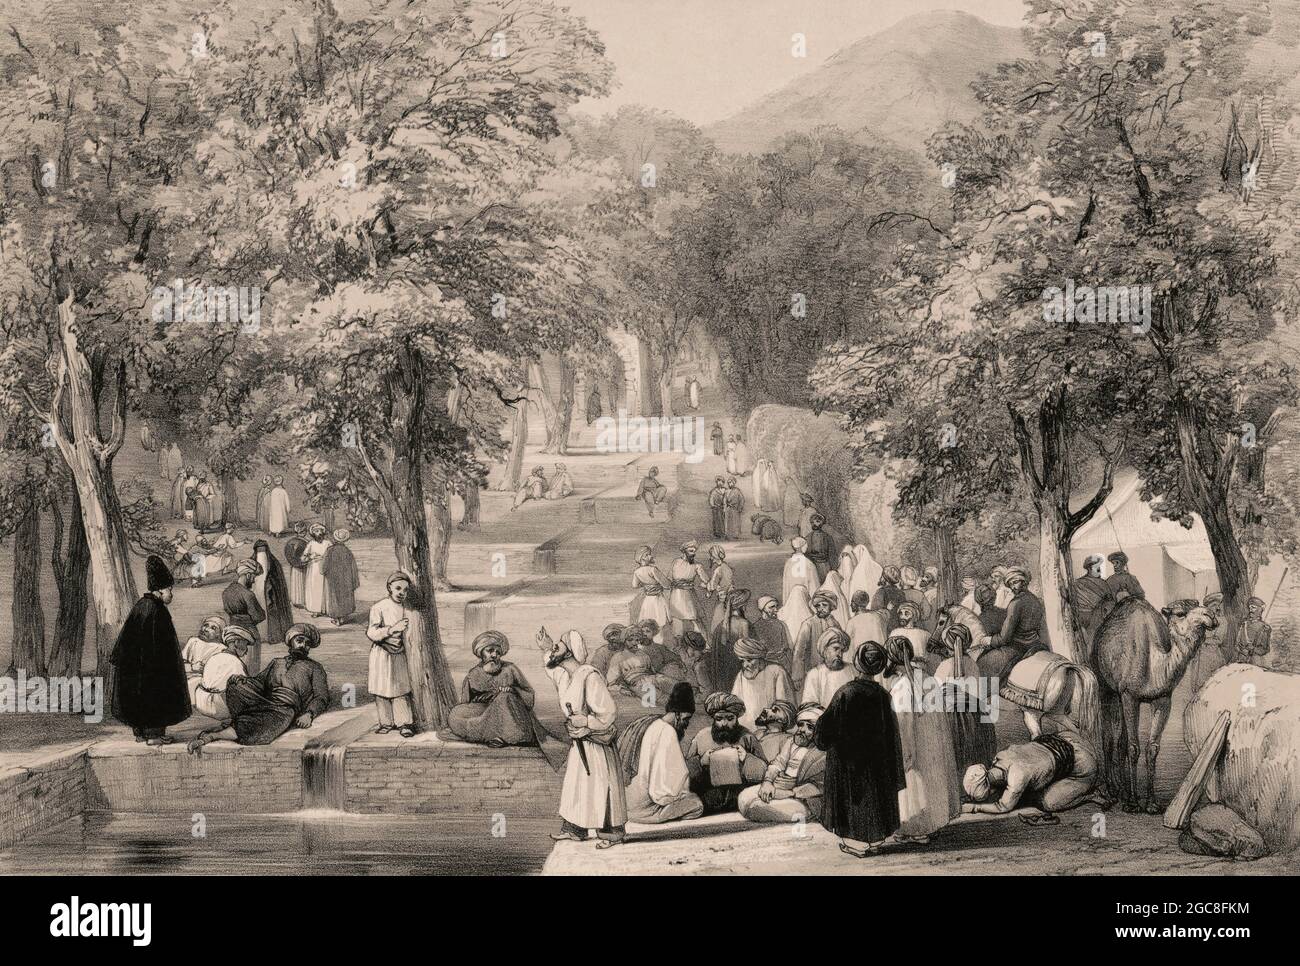 Der Garten von Kaiser Zahir ad-DIN Muhammad Babur, Kabul, Afghanistan, erster Anglo-afghanischer Krieg, Skizze von James Atkinson, 1839, digital optimiert Stockfoto